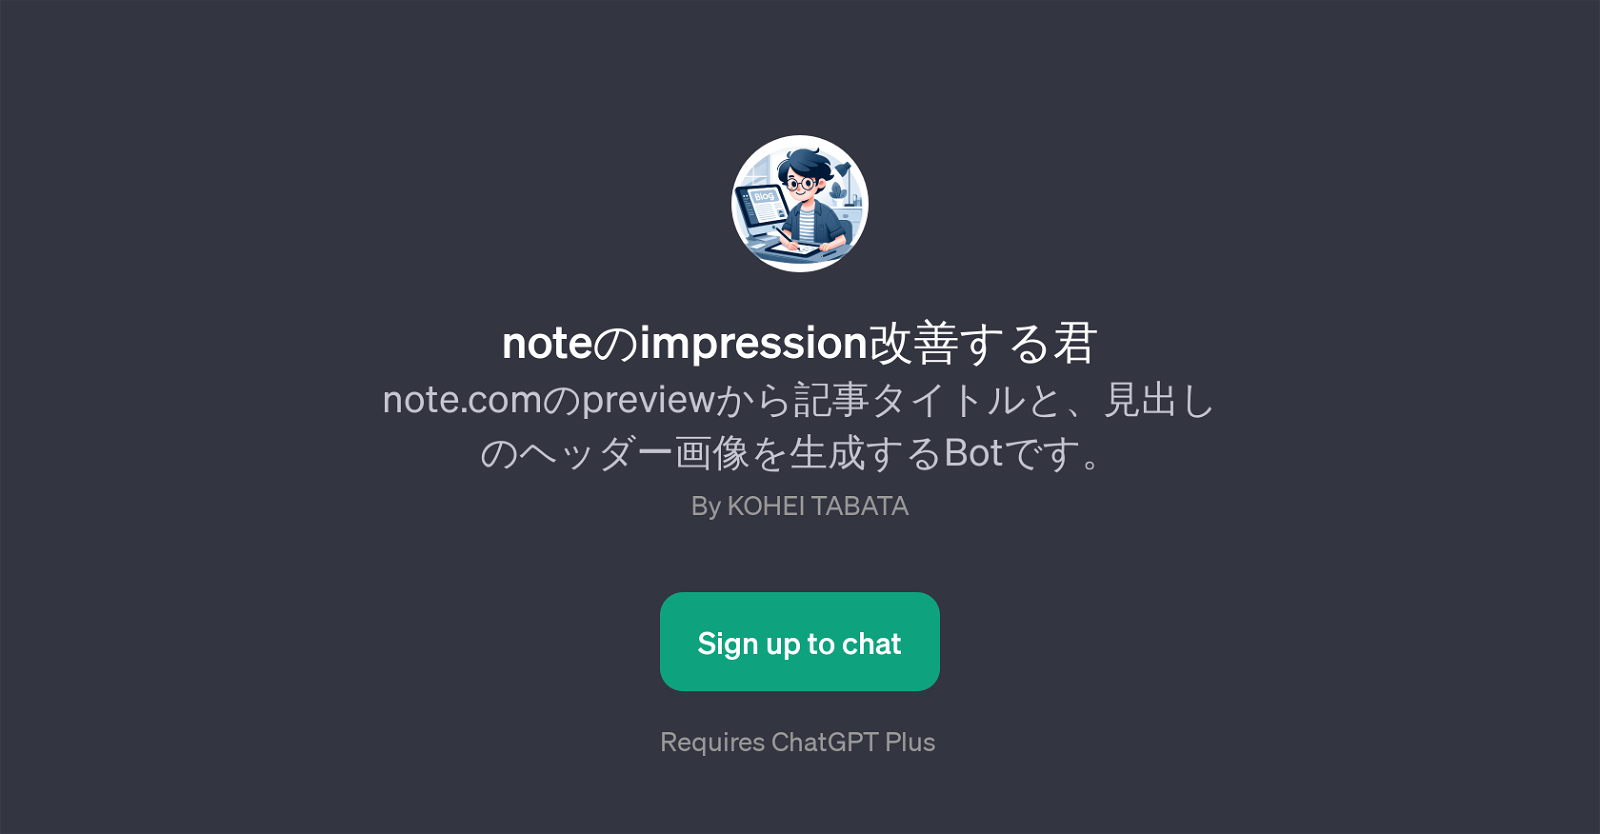 noteimpression website